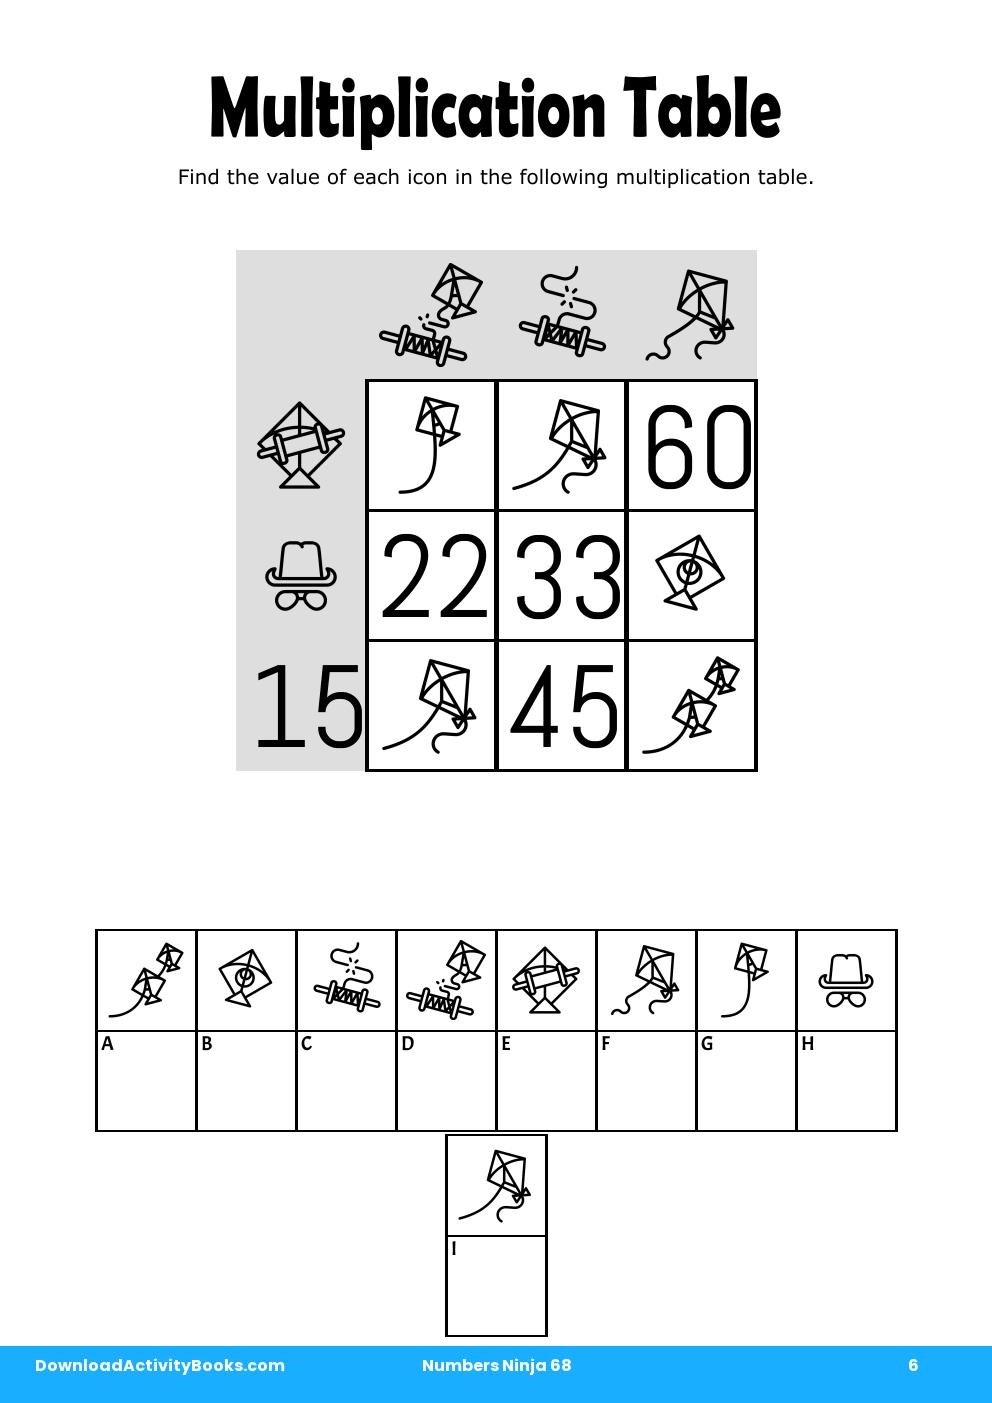 Multiplication Table in Numbers Ninja 68